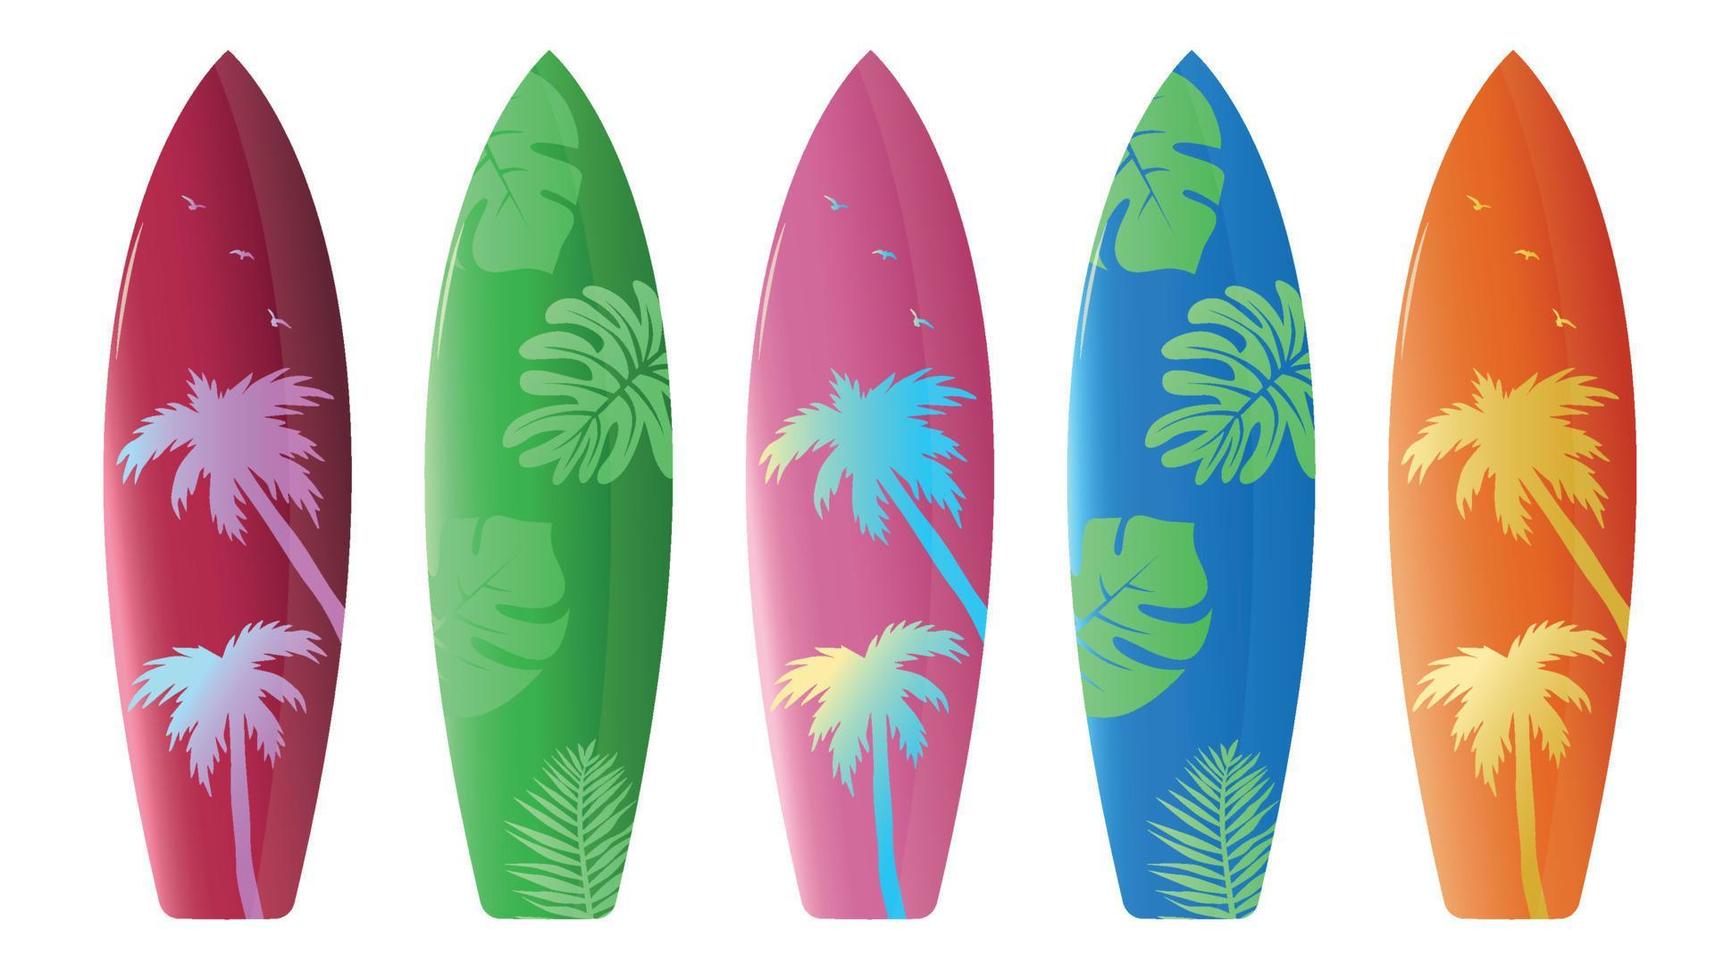 cenografia de vetor de prancha de surf de verão. pranchas de surf em decoração de padrão colorido isoladas em fundo branco para coleção de designs de atividade de verão. ilustração vetorial